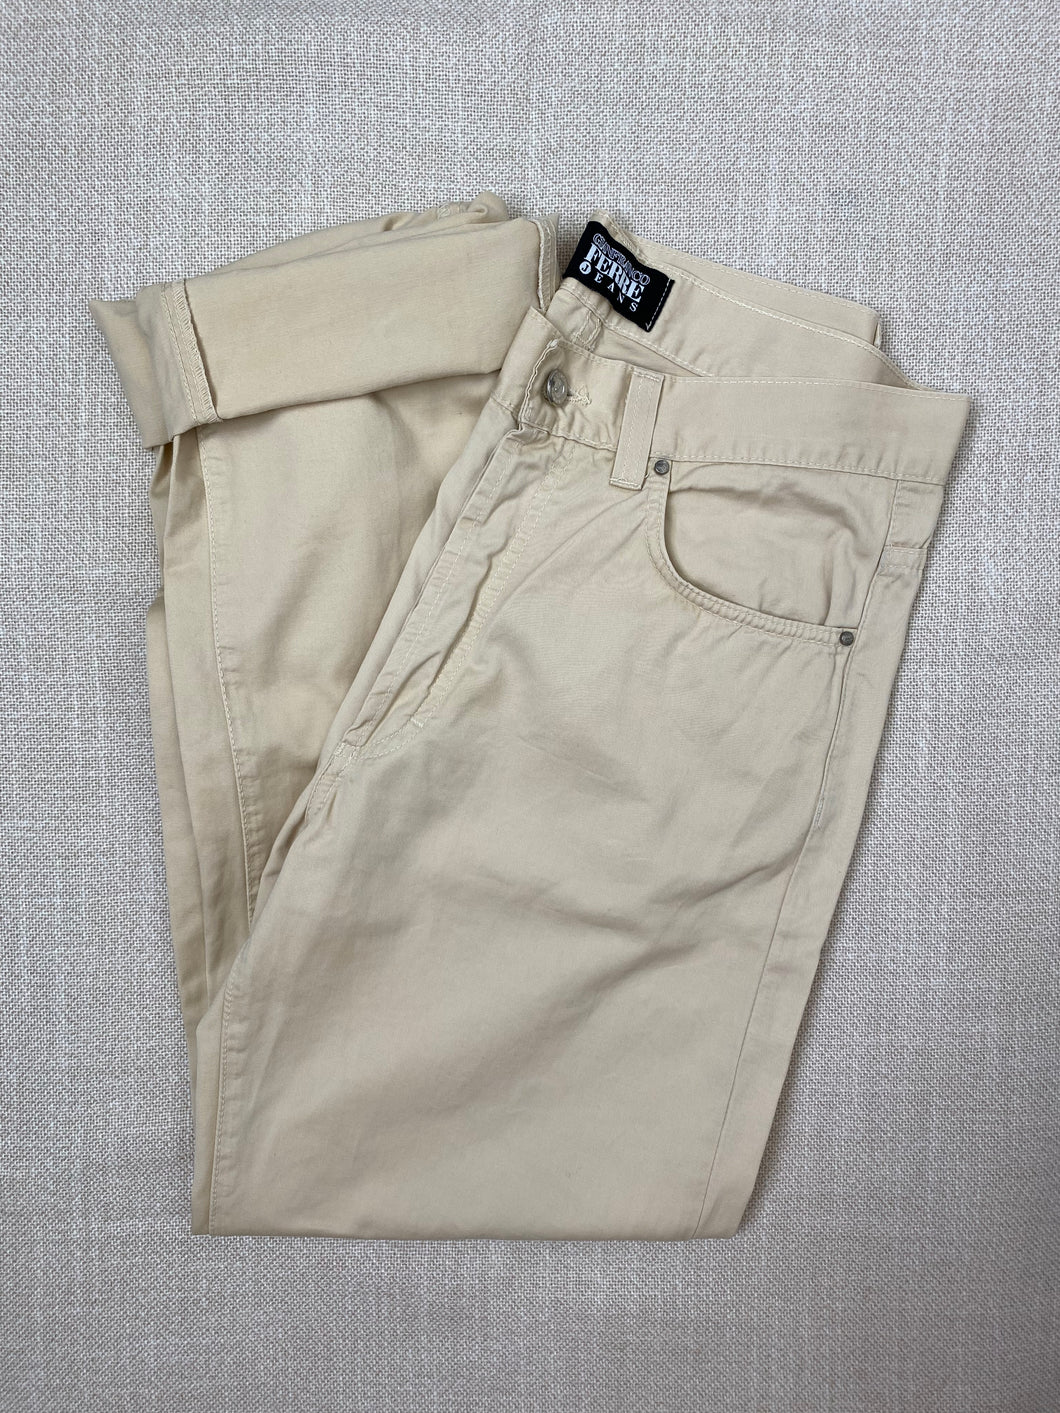 1990s GIANFRANCO FERRE jeans beige